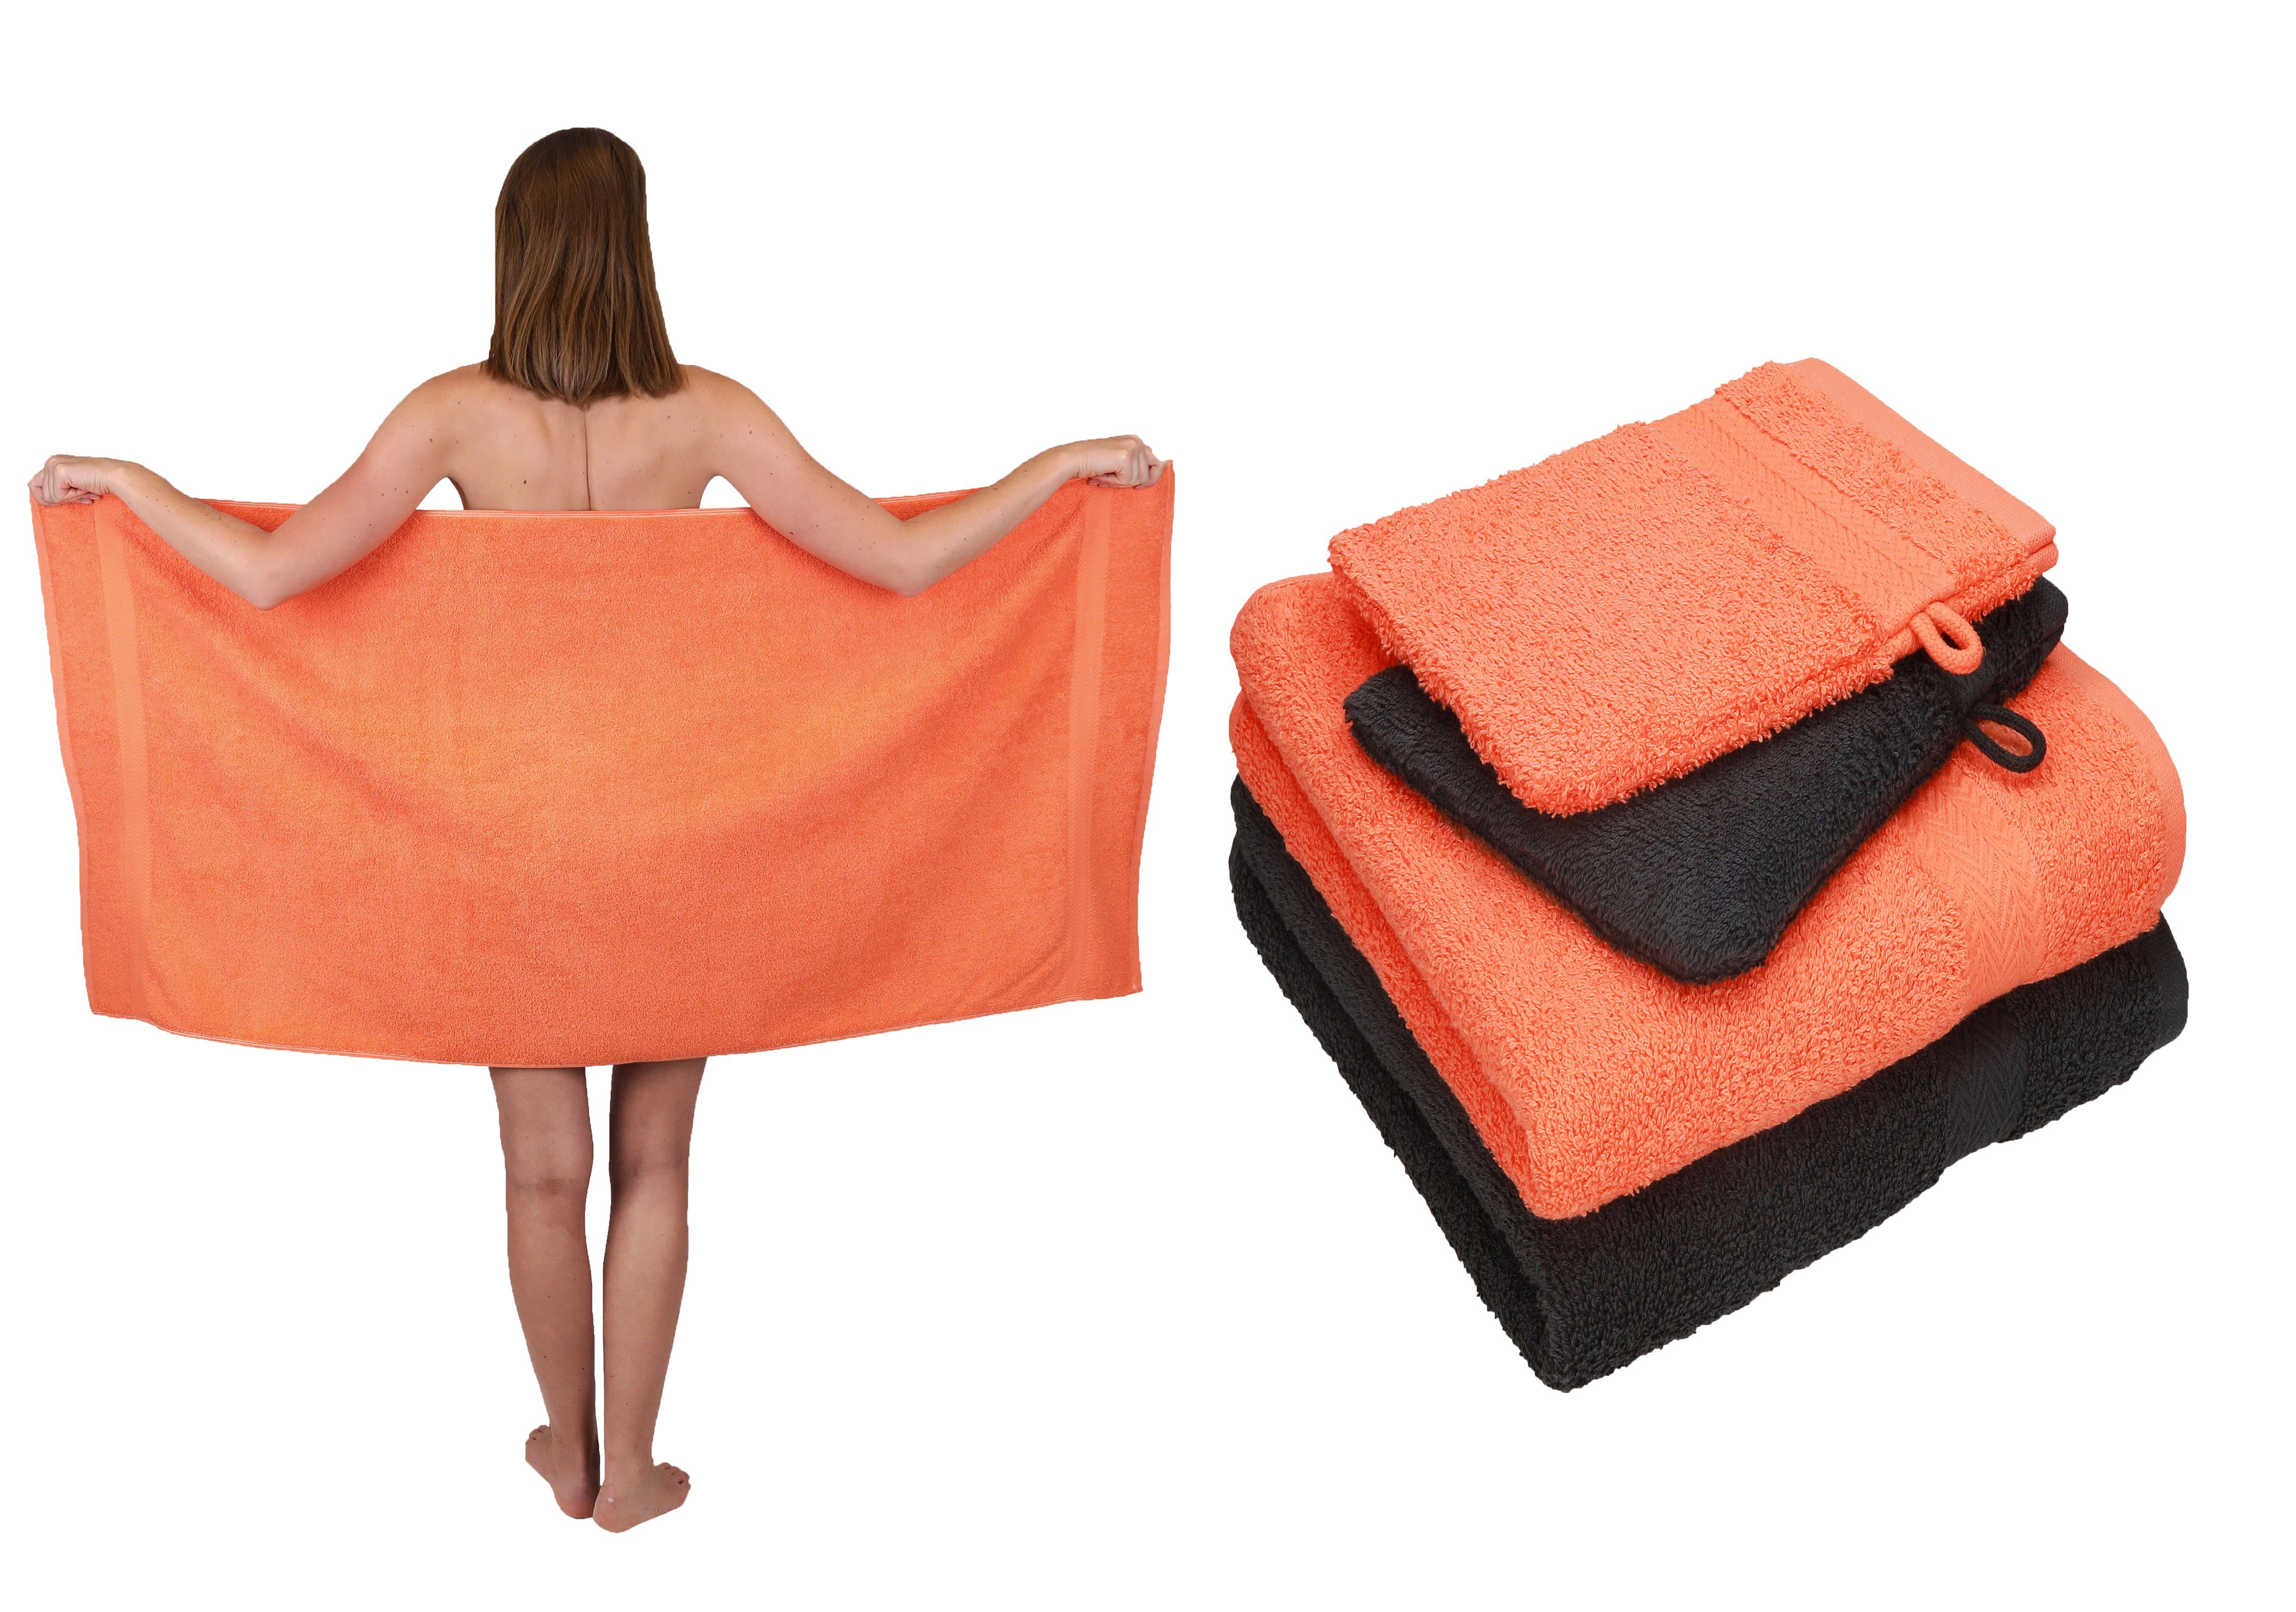 Betz Handtuch Set 5 TLG. Handtuch Set Single Pack 100% Baumwolle 1 Duschtuch 2 Handtücher 2 Waschhandschuhe, 100% Baumwolle blutorange-graphit grau | Handtuch-Sets